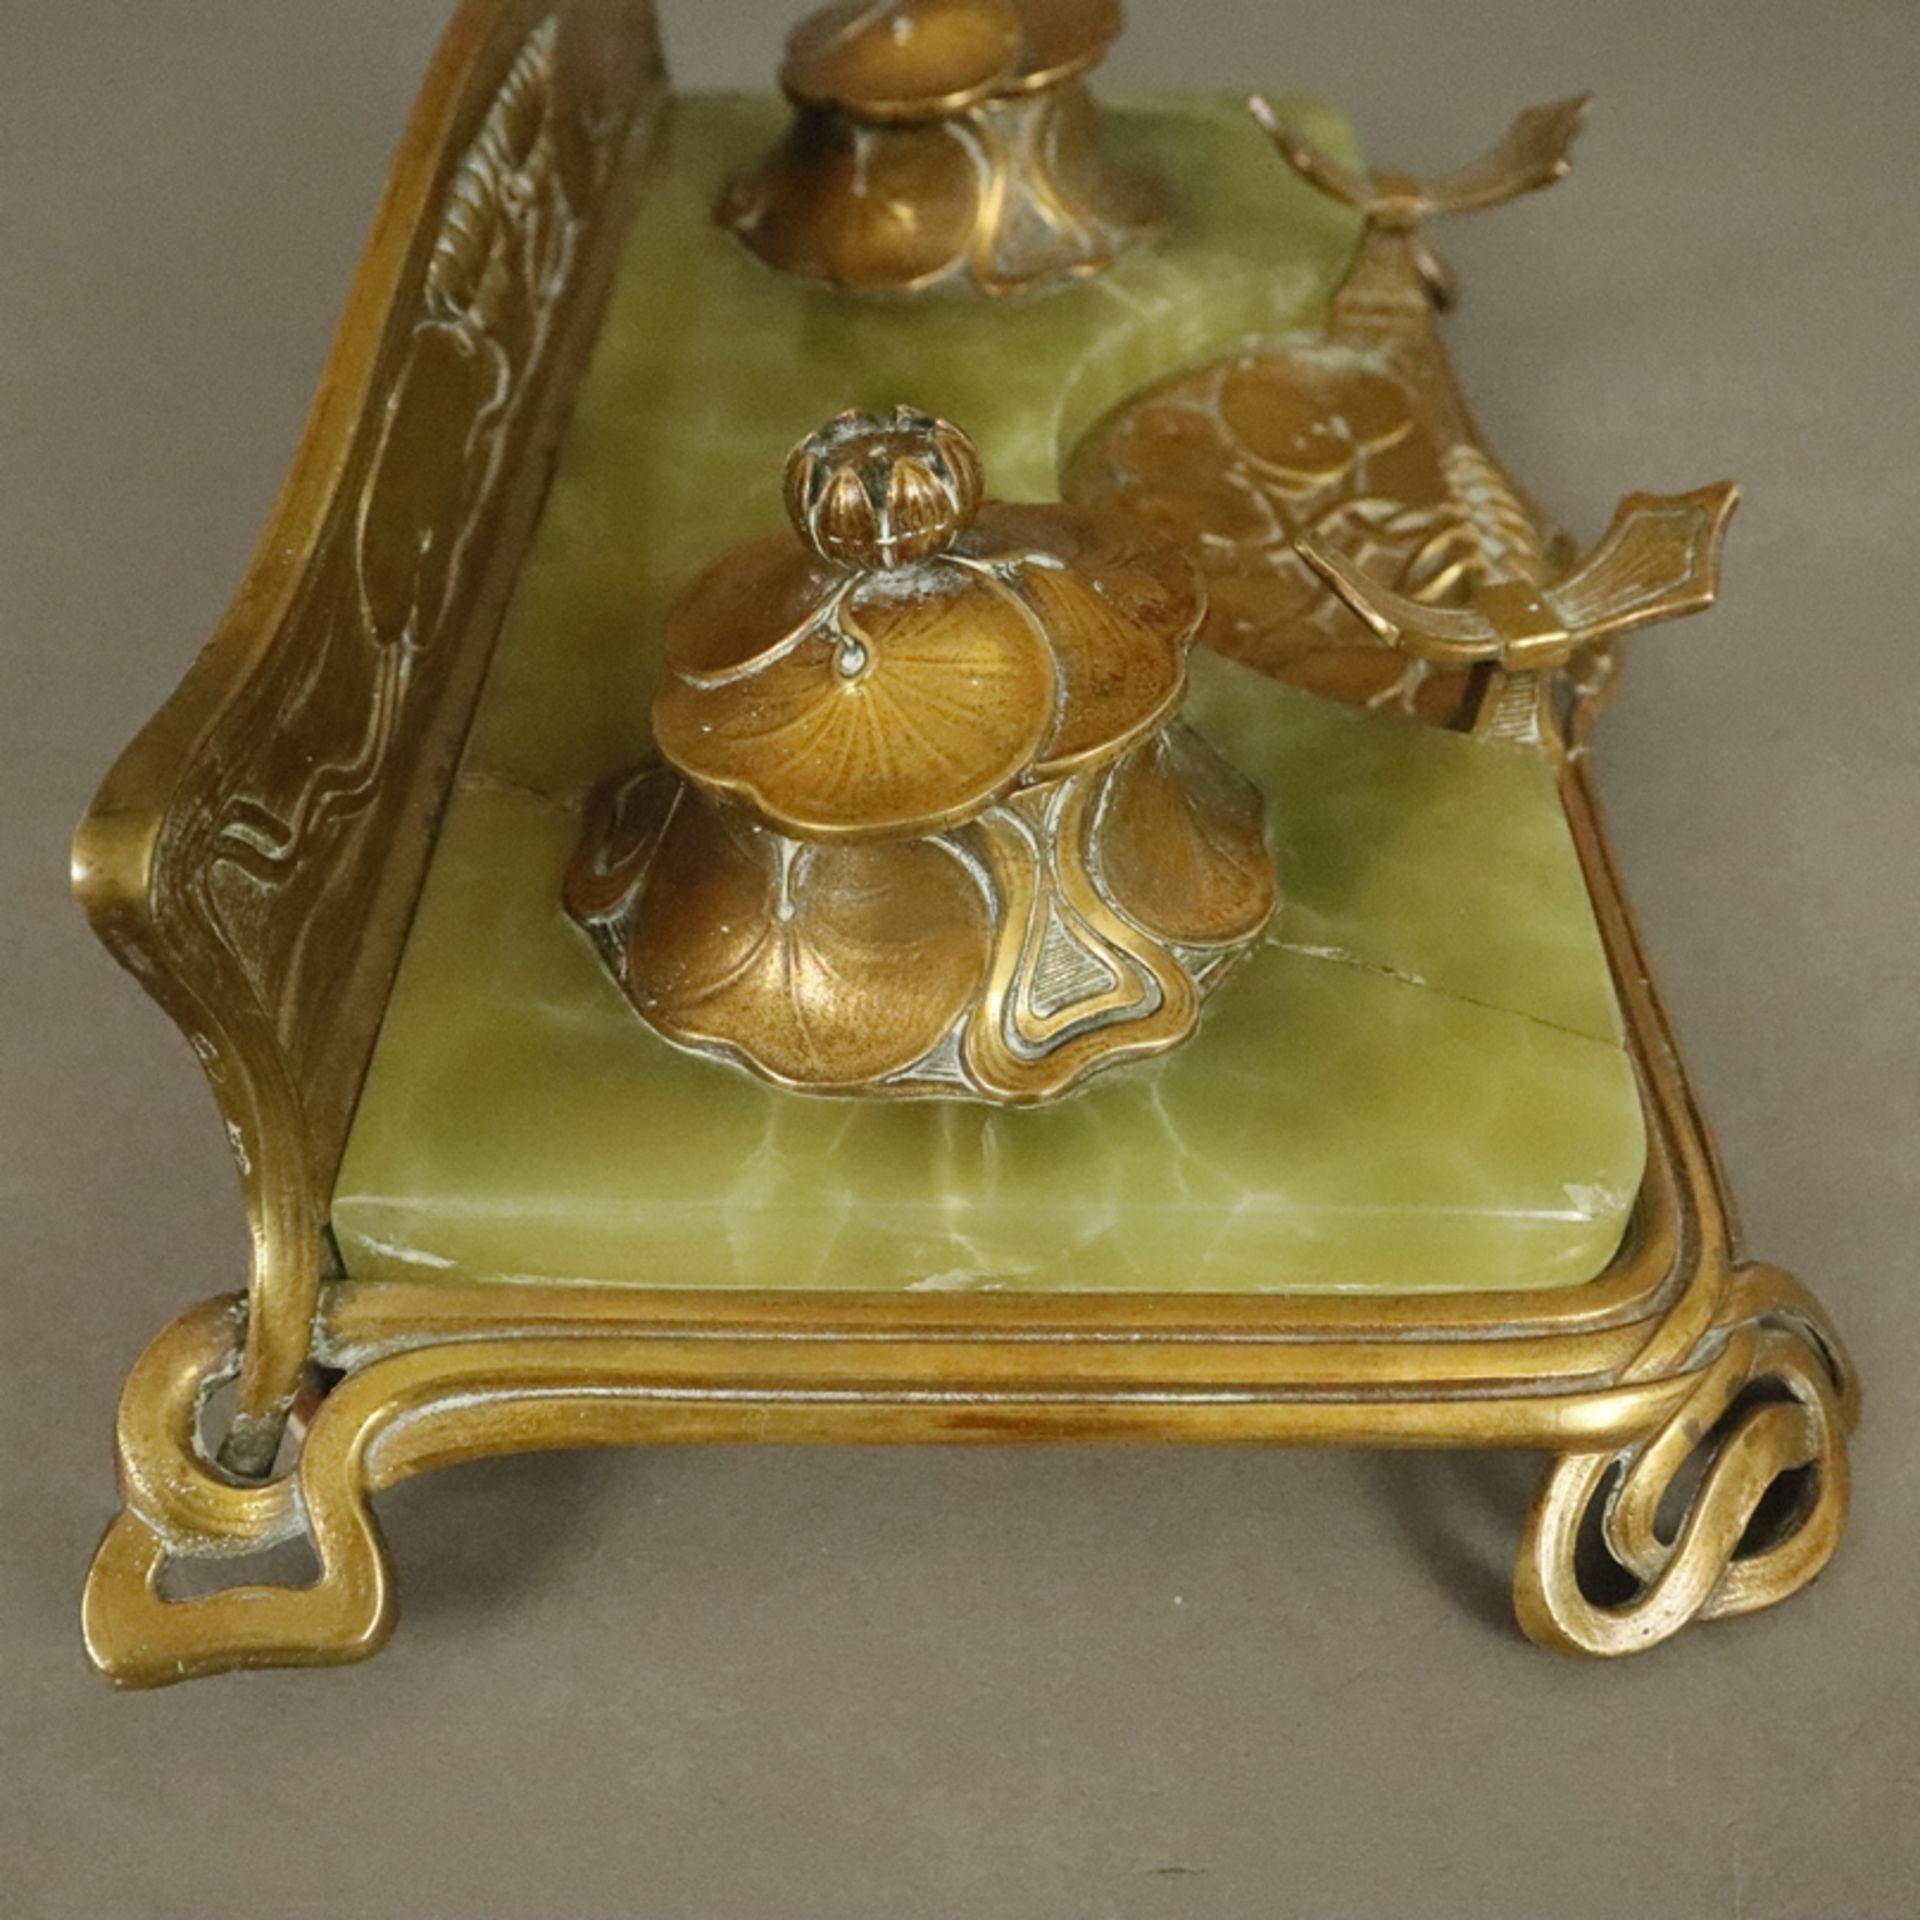 Jugendstil-Schreibtischgarnitur - um 1900/10, geschwungenes Bronzegestell mit Seerosen-Reliefdekor, - Bild 11 aus 12